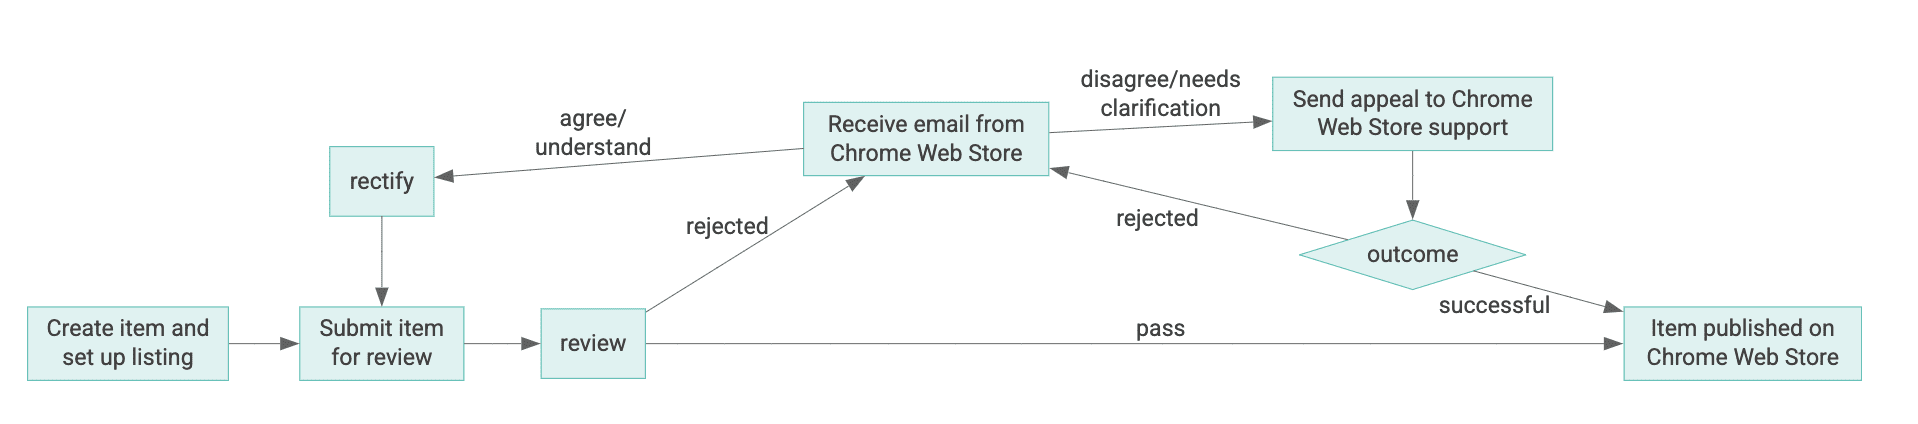 Chrome ウェブストアのアイテムのライフサイクル図